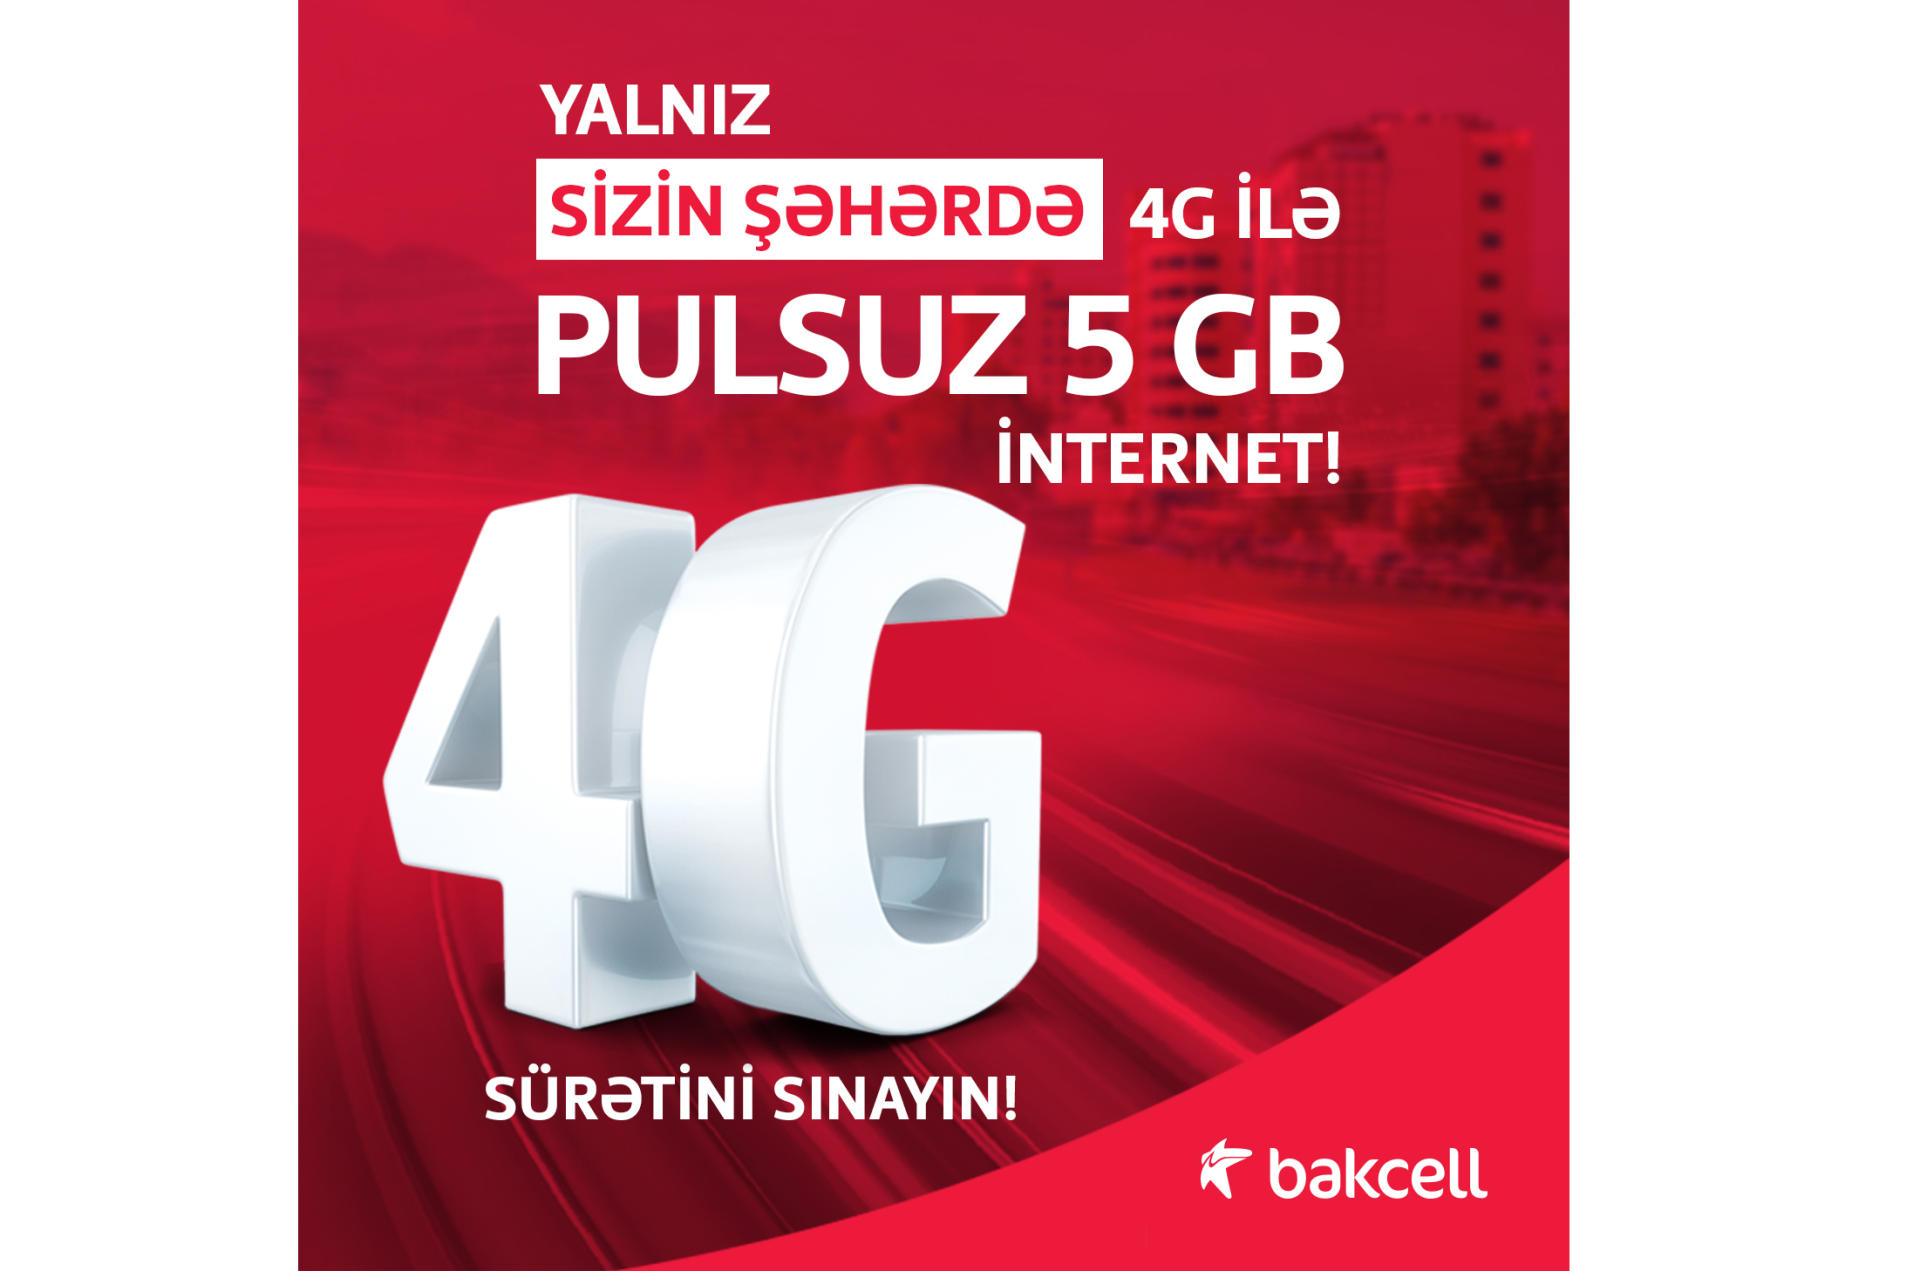 Жители еще 12 регионов Азербайджана получили бесплатный 4G интернет от Bakcell